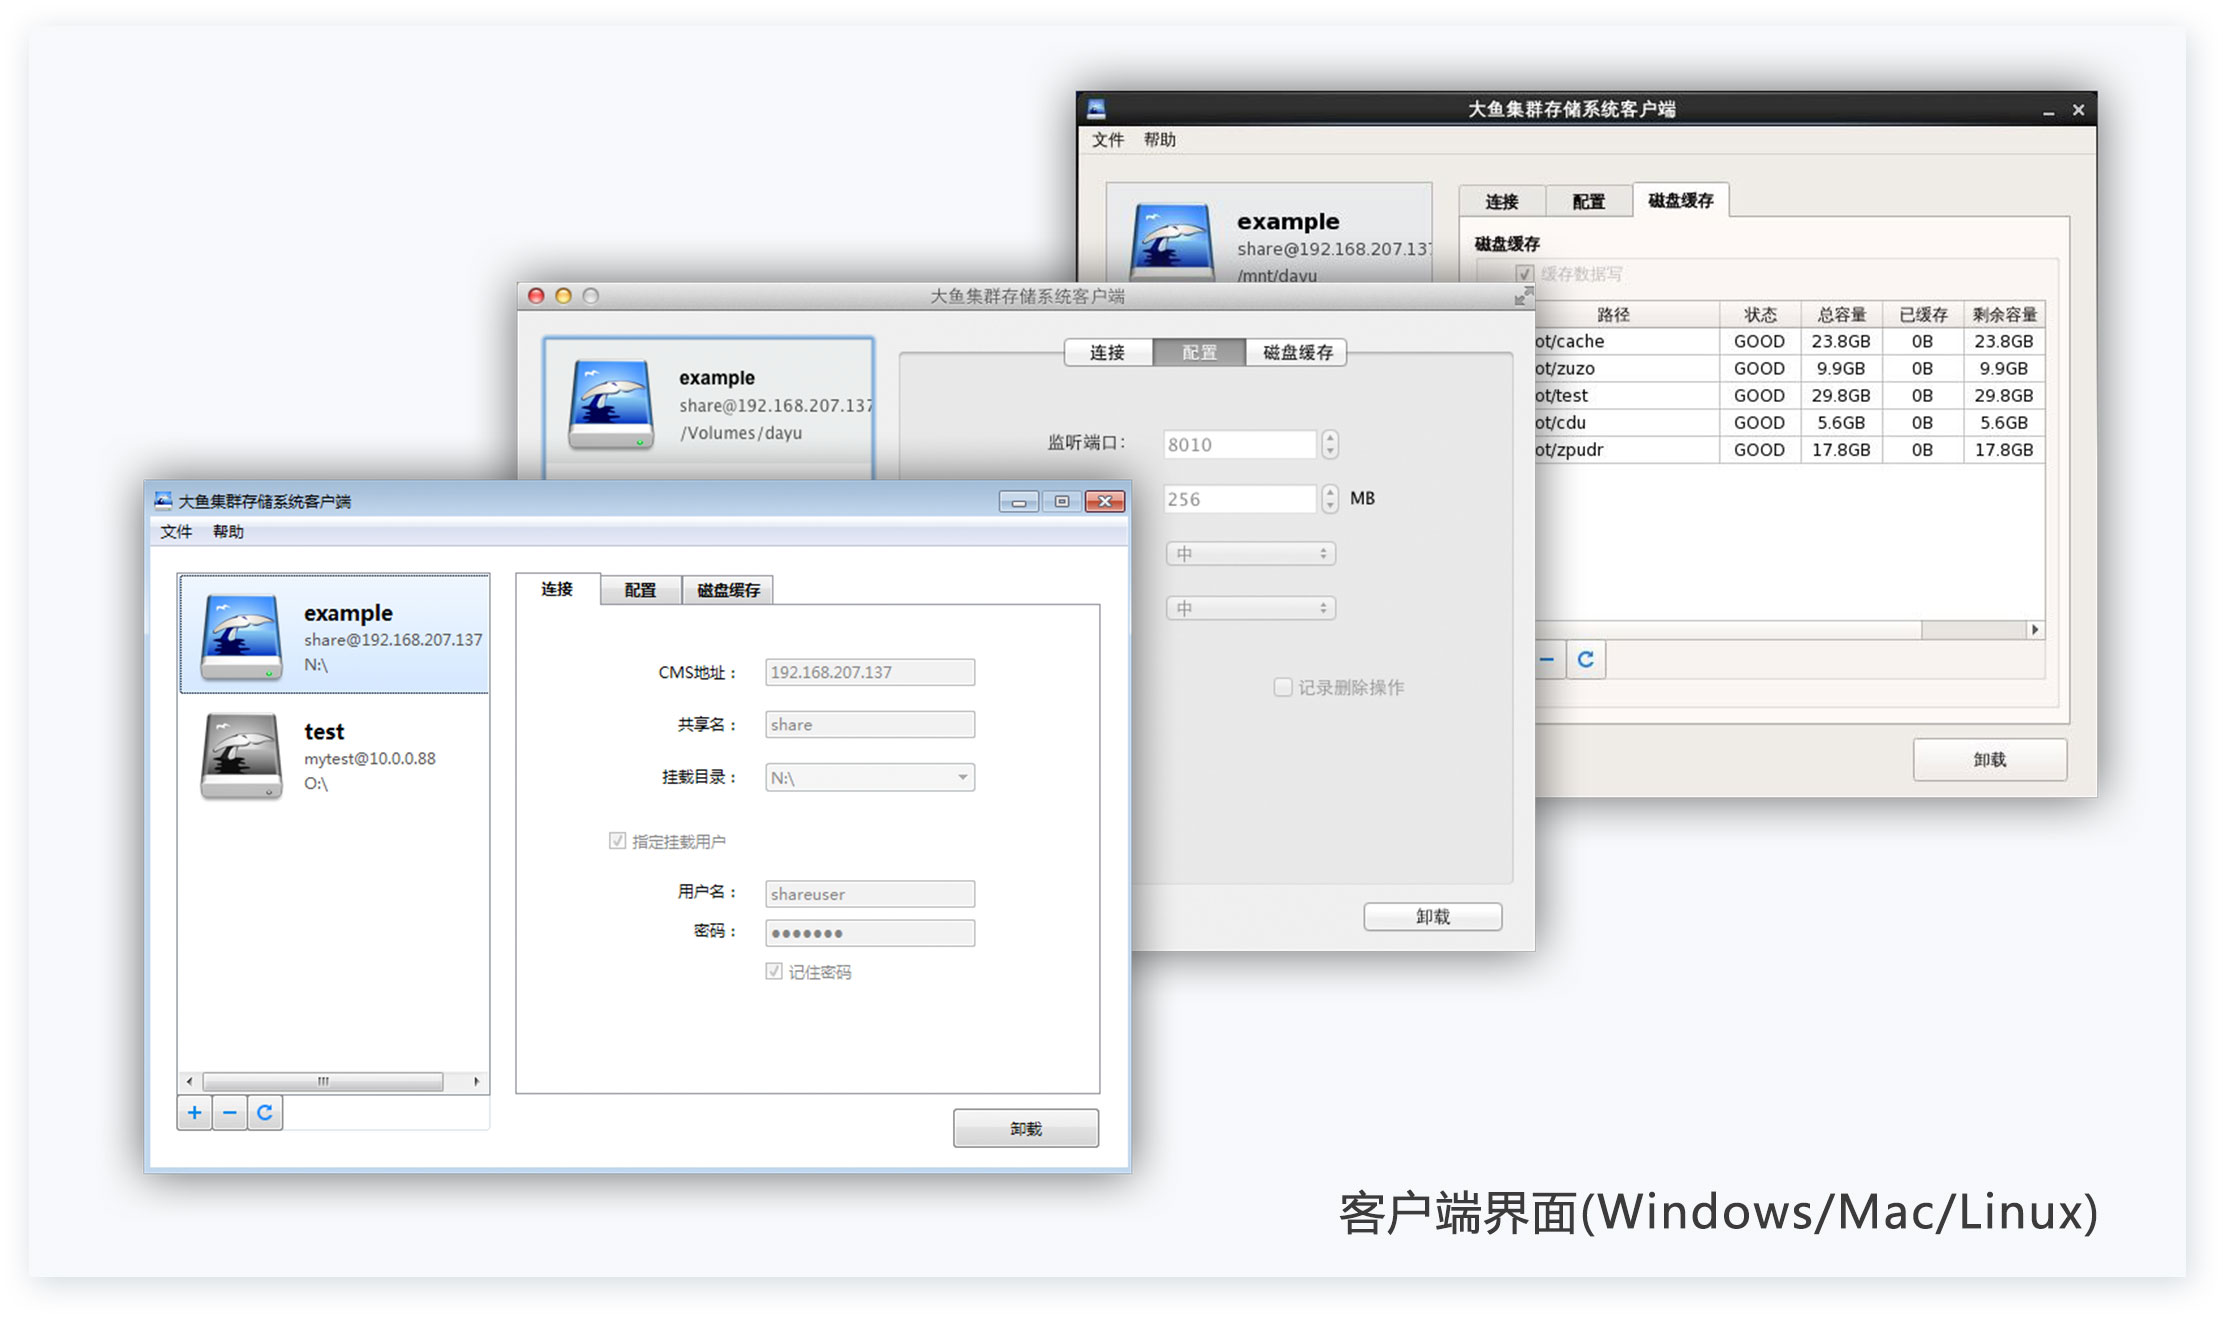 客户端界面（windows/Mac/Linux）